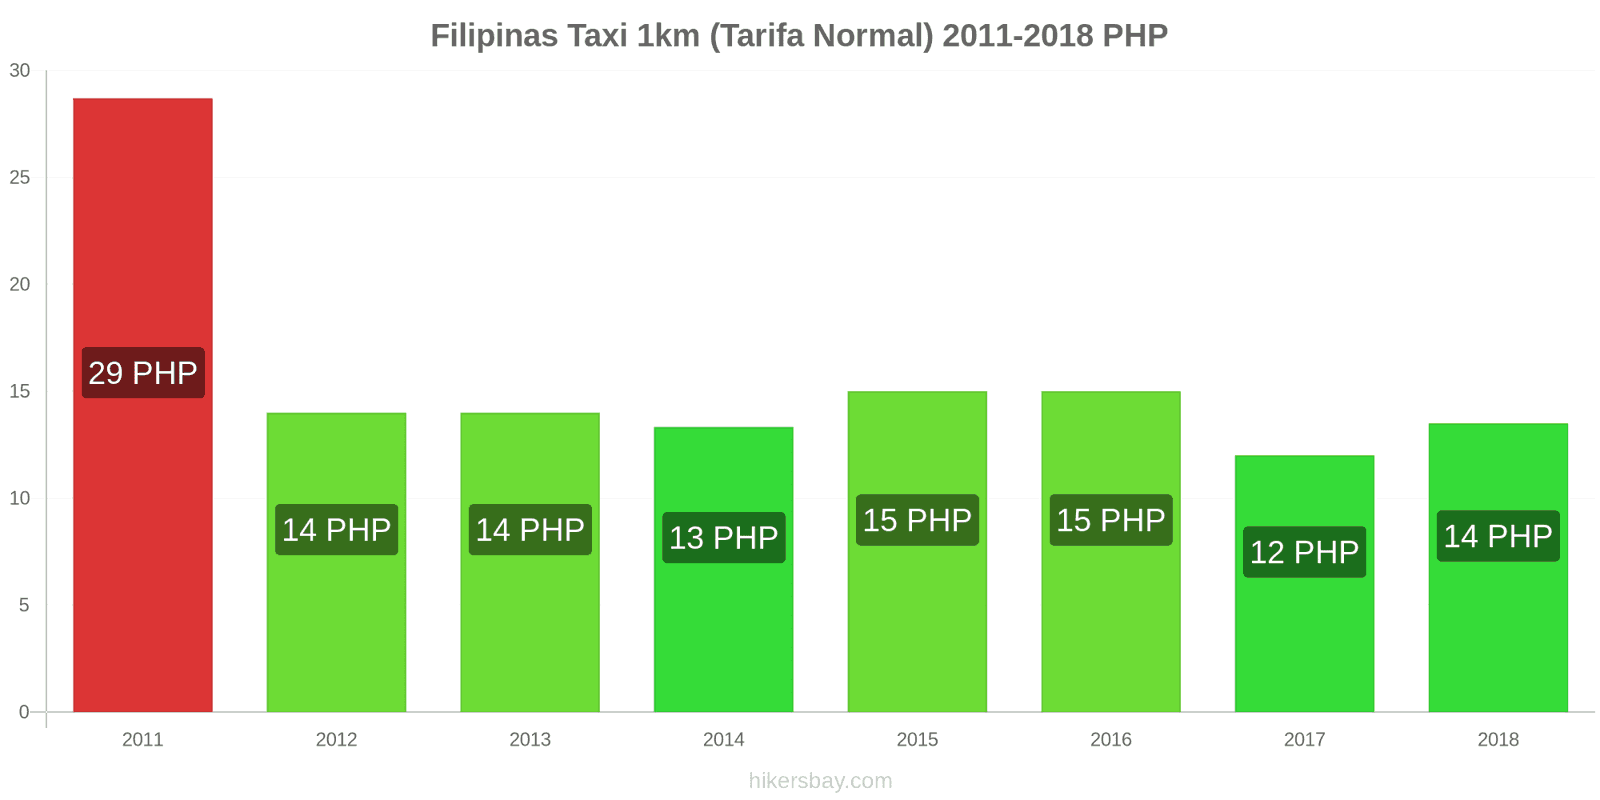 Filipinas cambios de precios Taxi 1km (tarifa normal) hikersbay.com